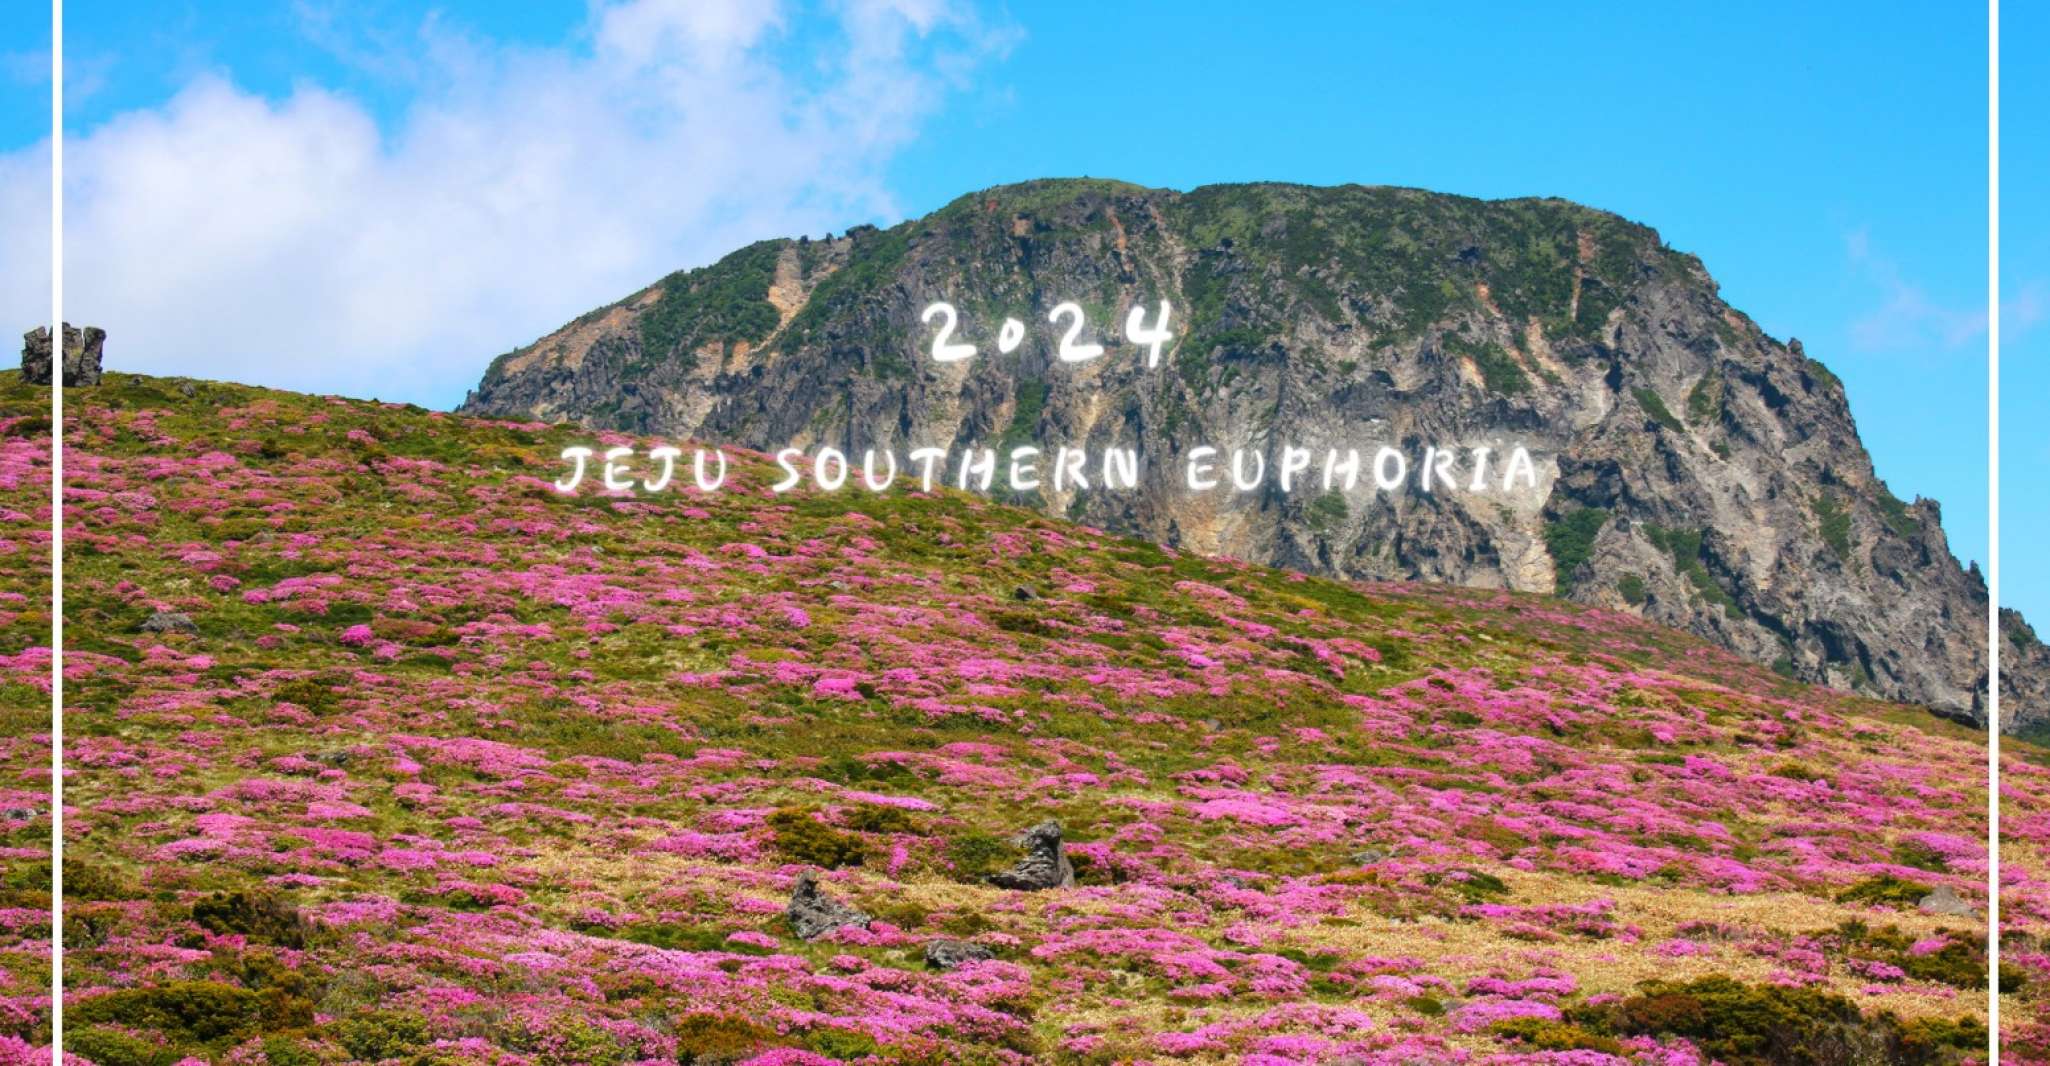 Jeju-si, Jeju Island South Guided Tour - Housity